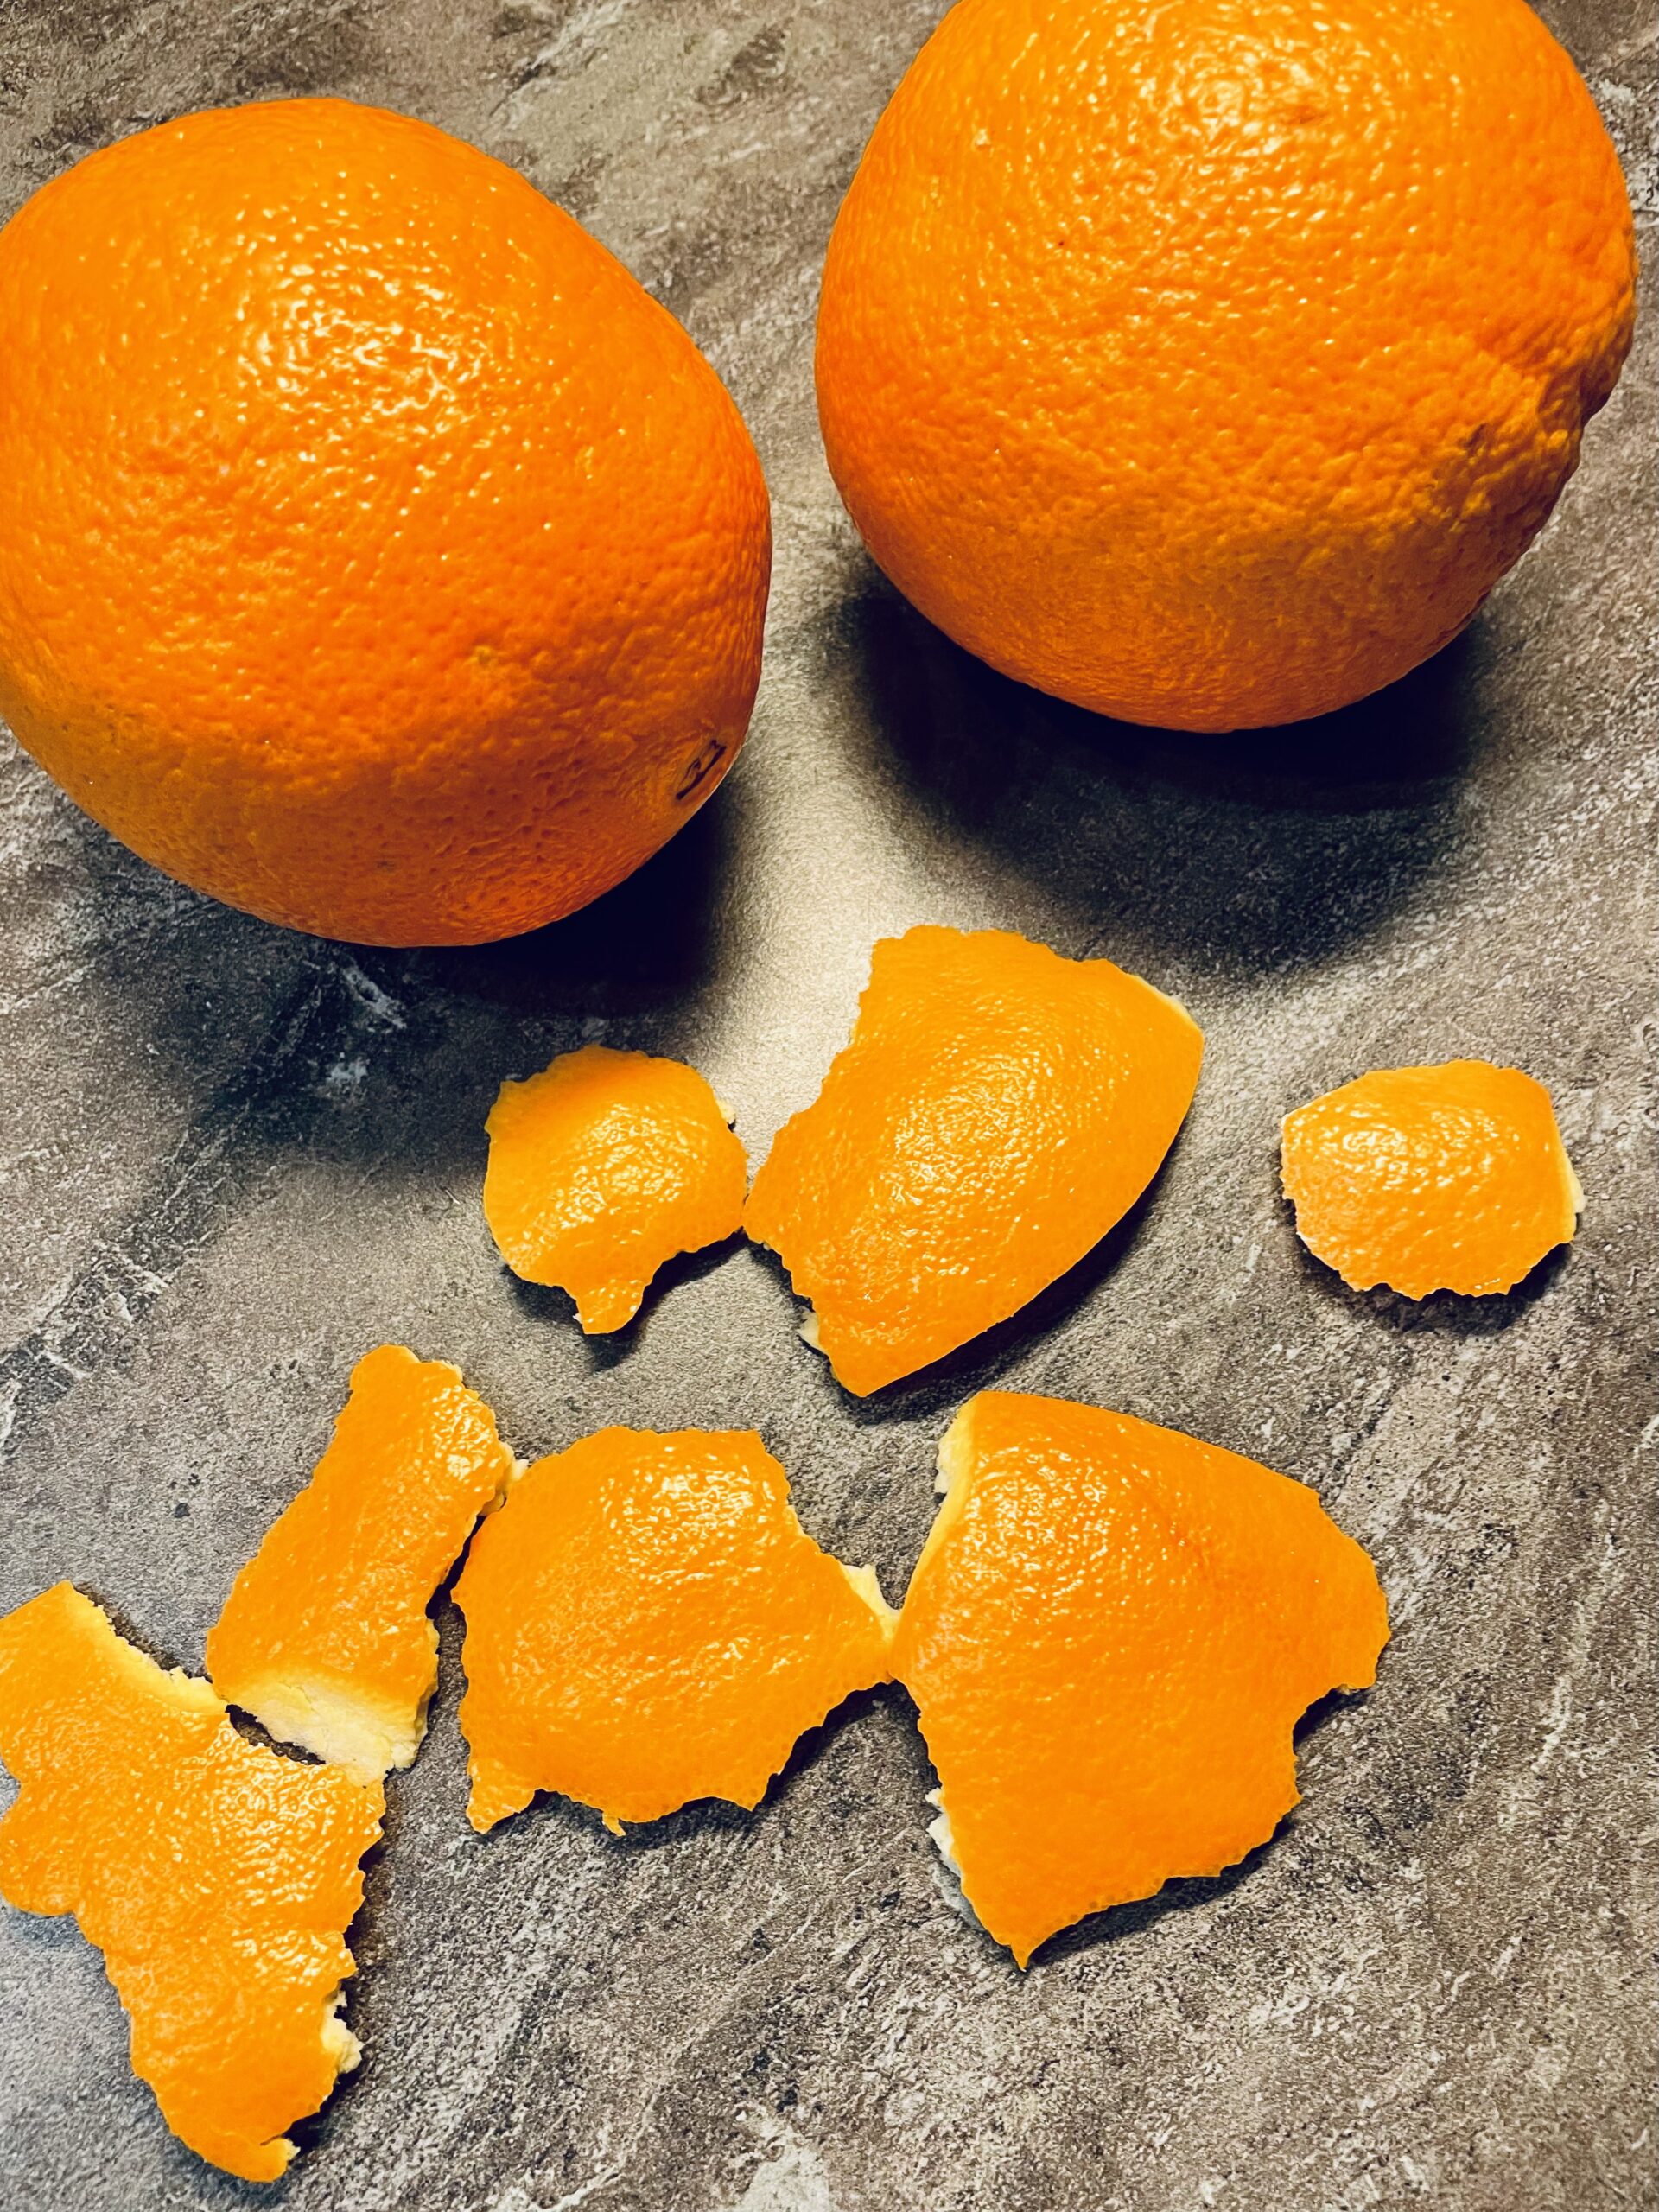 Bild zum Schritt 1 für das Bastel- und DIY-Abenteuer für Kinder: 'Schält zuerst die Orange und achtet darauf große Stücke abzuschälen.'